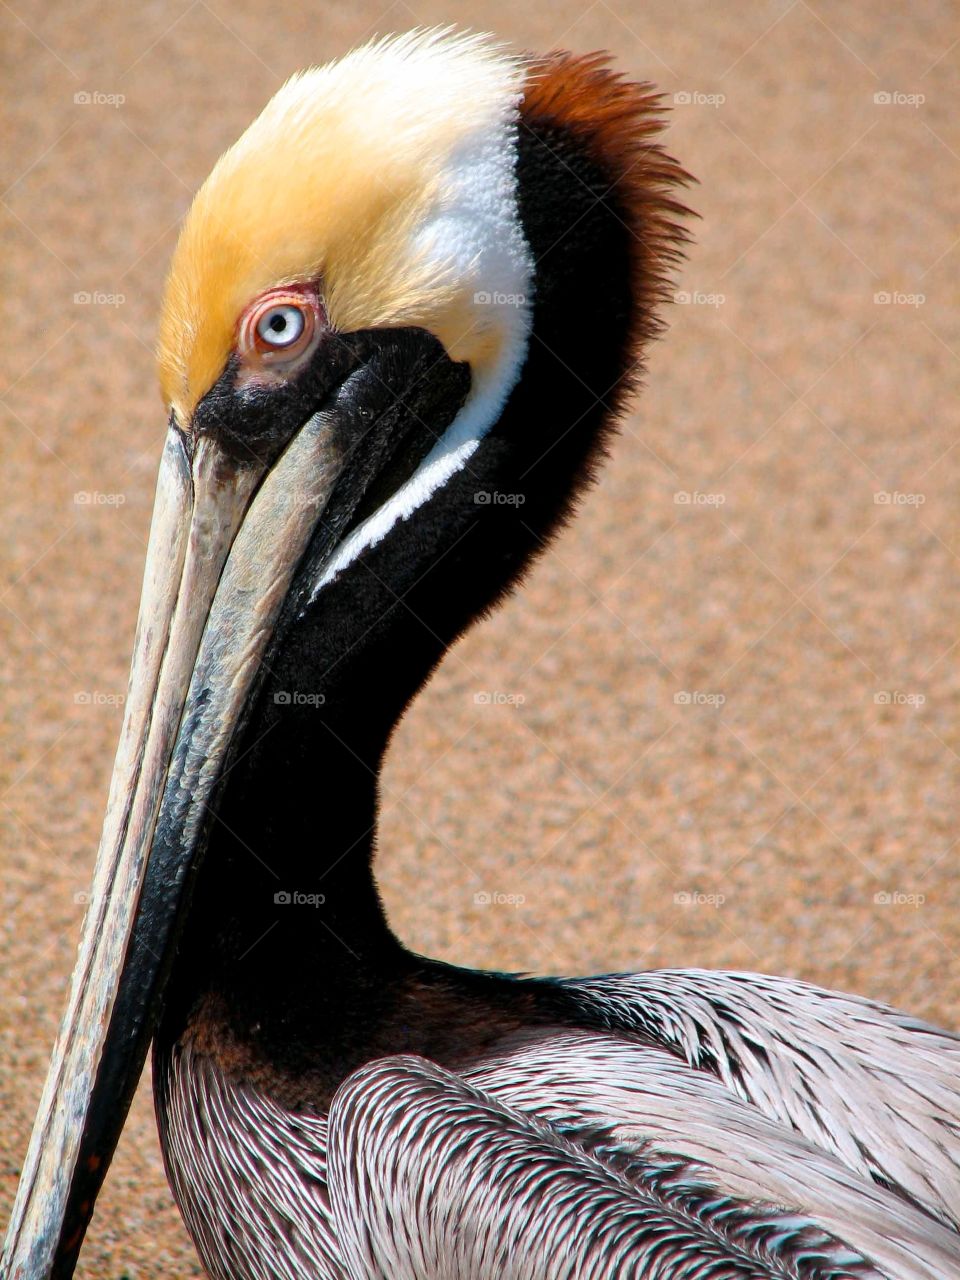 Pelican head. Pelican close-up in Puerto Vallarta, Mexico